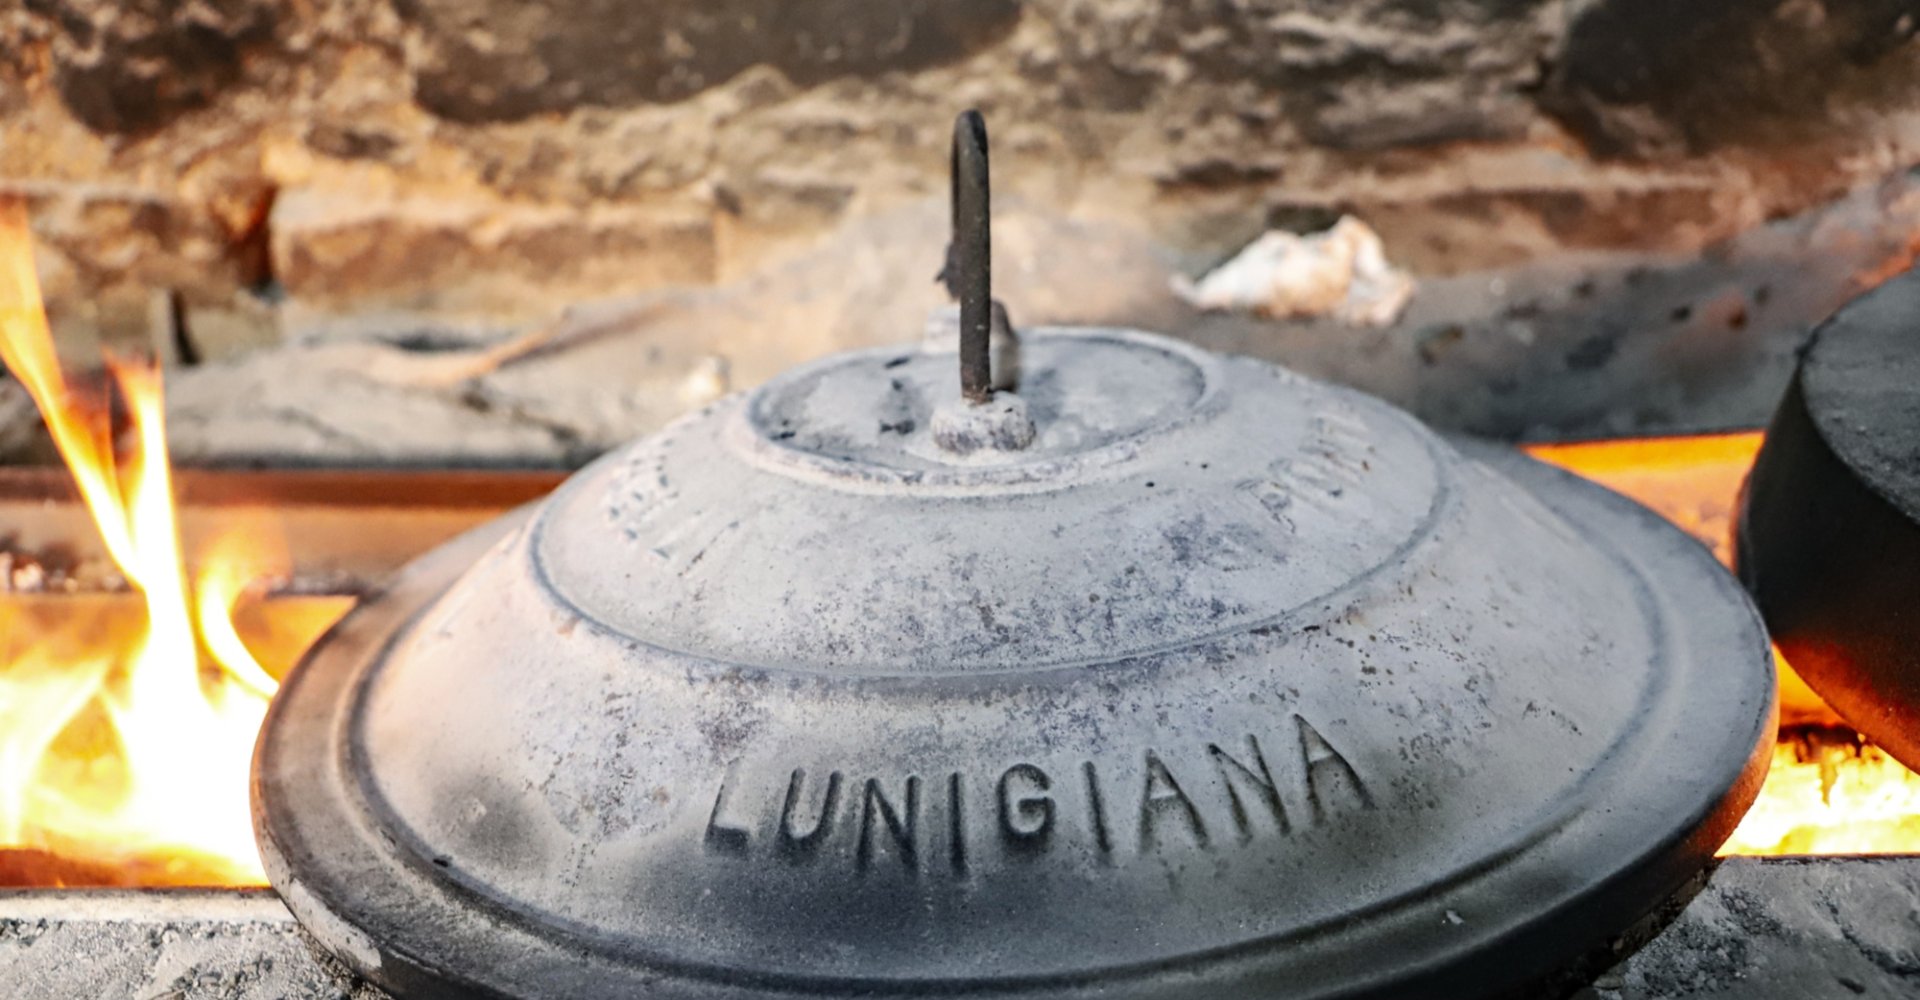 Old flavours and traditions: Testo della Lunigiana